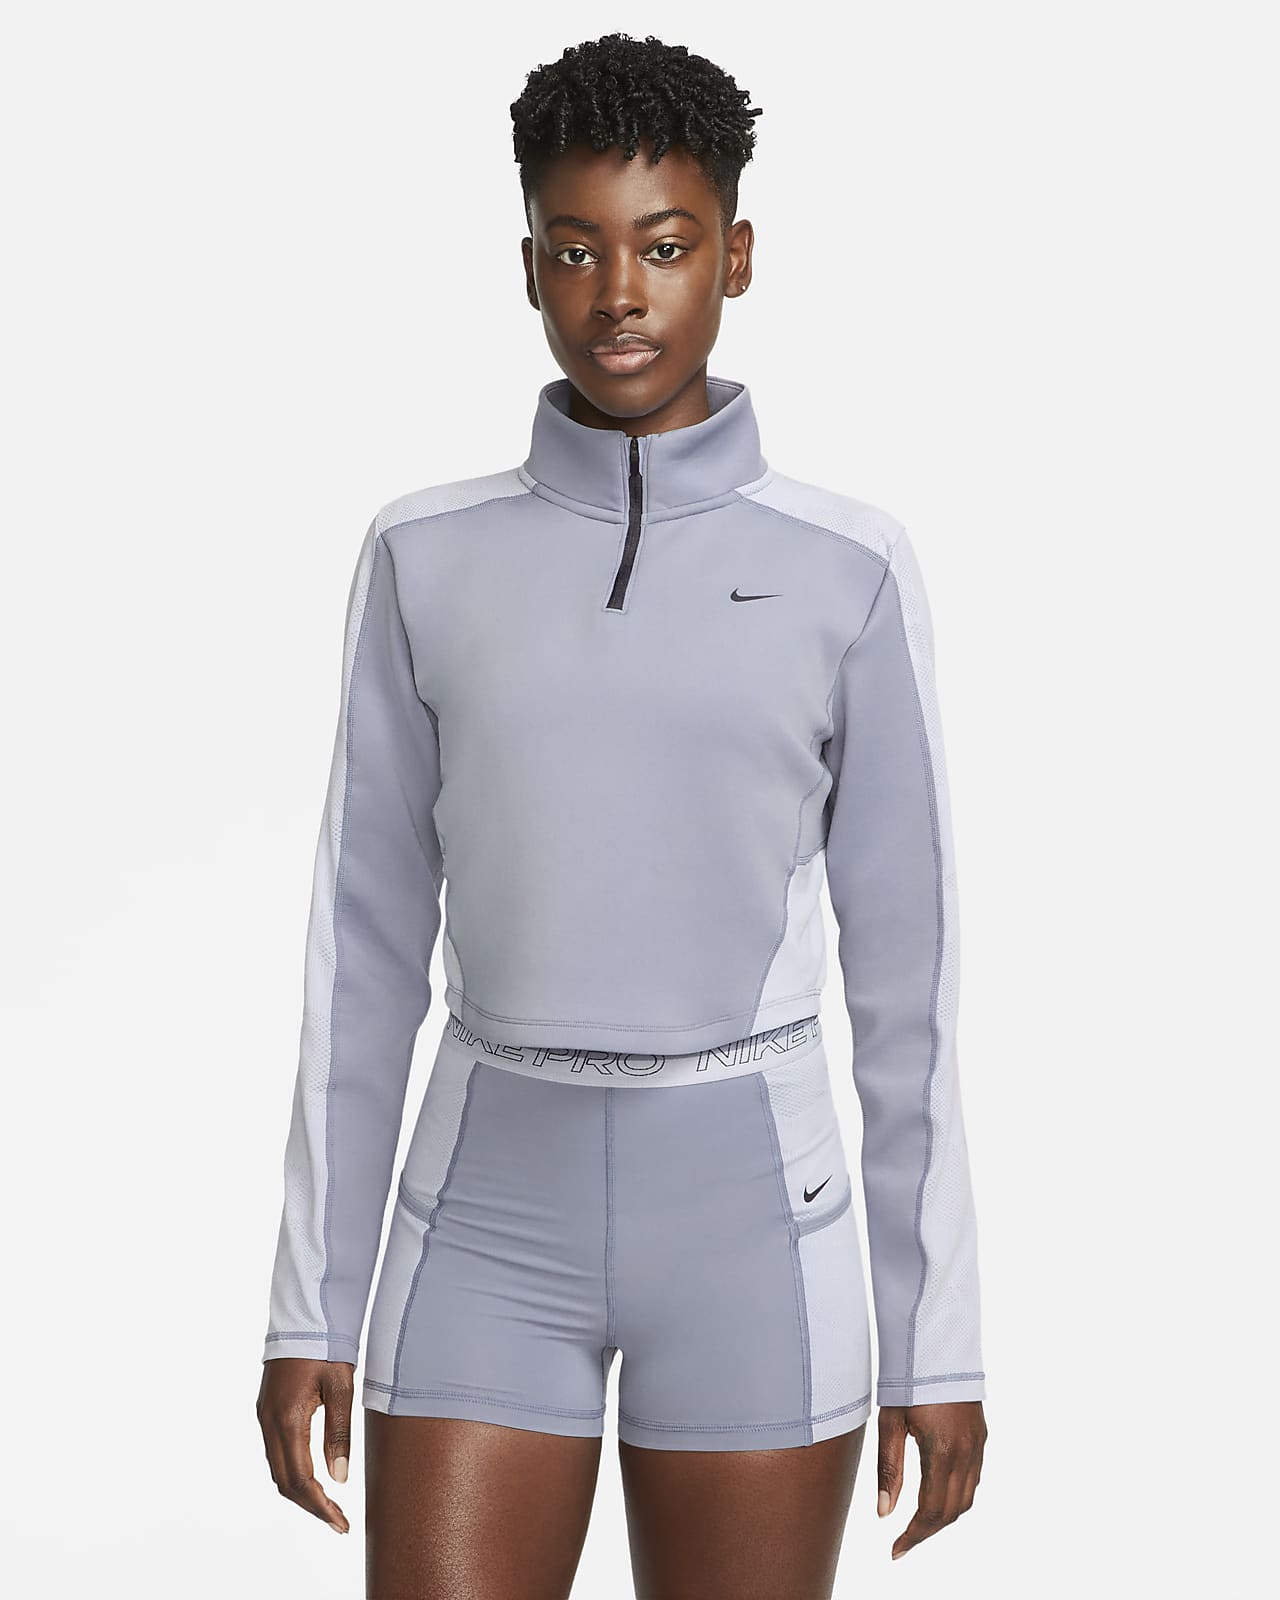 Nike Women's Long-Sleeve 1/4-Zip Training Top. Nike LU